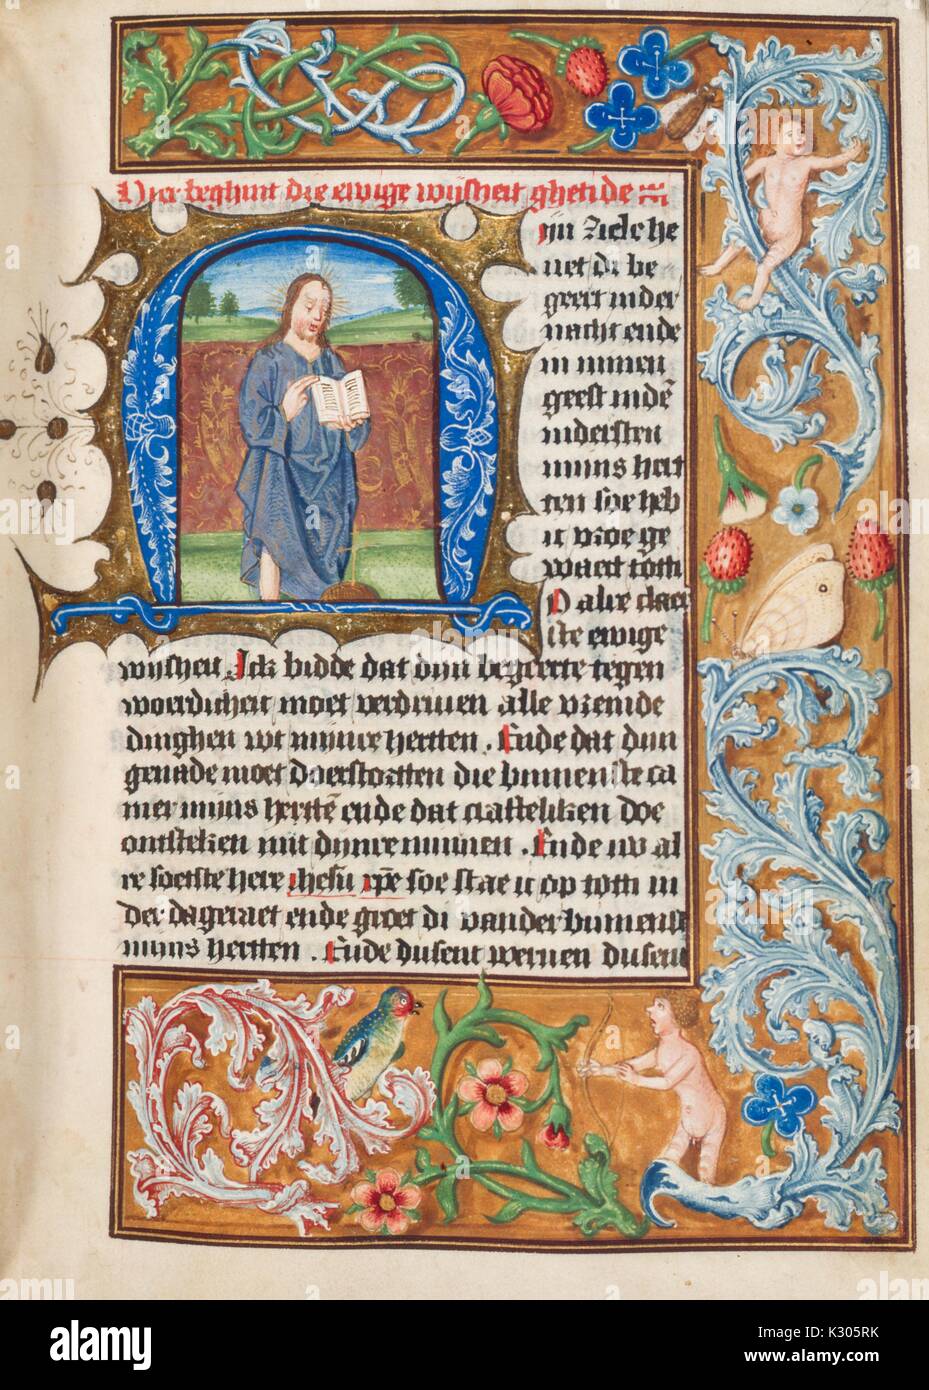 Manuscrit enluminé page illustrant l'enseignement de Jésus Christ avec un livre ouvert, d'un hollandais du 15e siècle livre d'heures, 2013. Banque D'Images